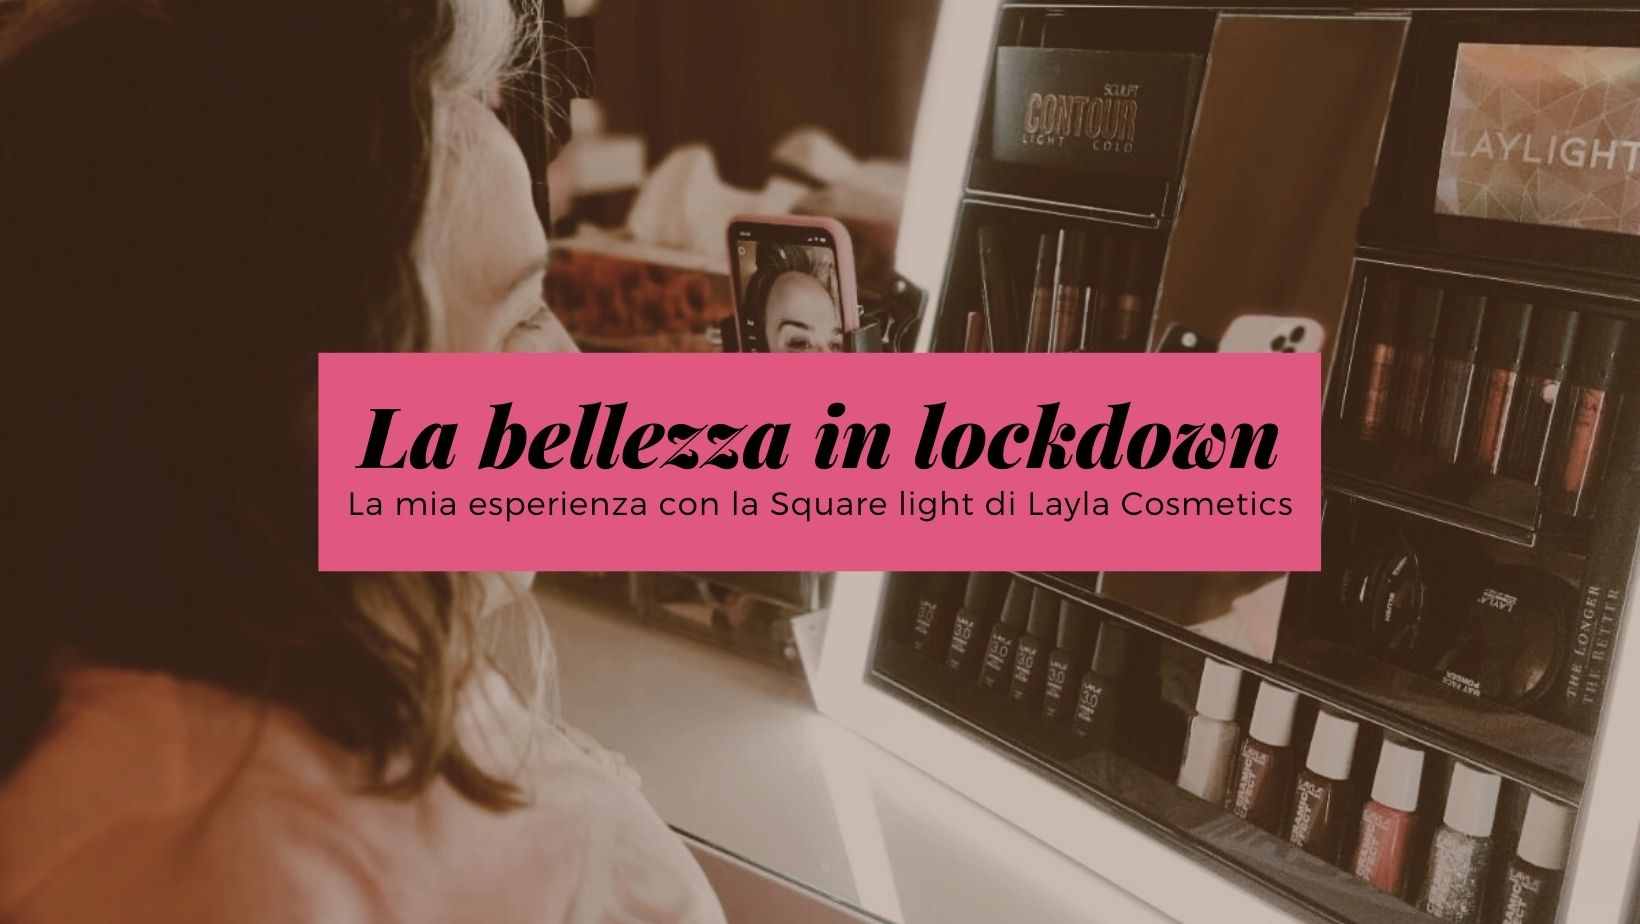 La bellezza in lockdown: la mia esperienza con la Square light di Layla Cosmetics